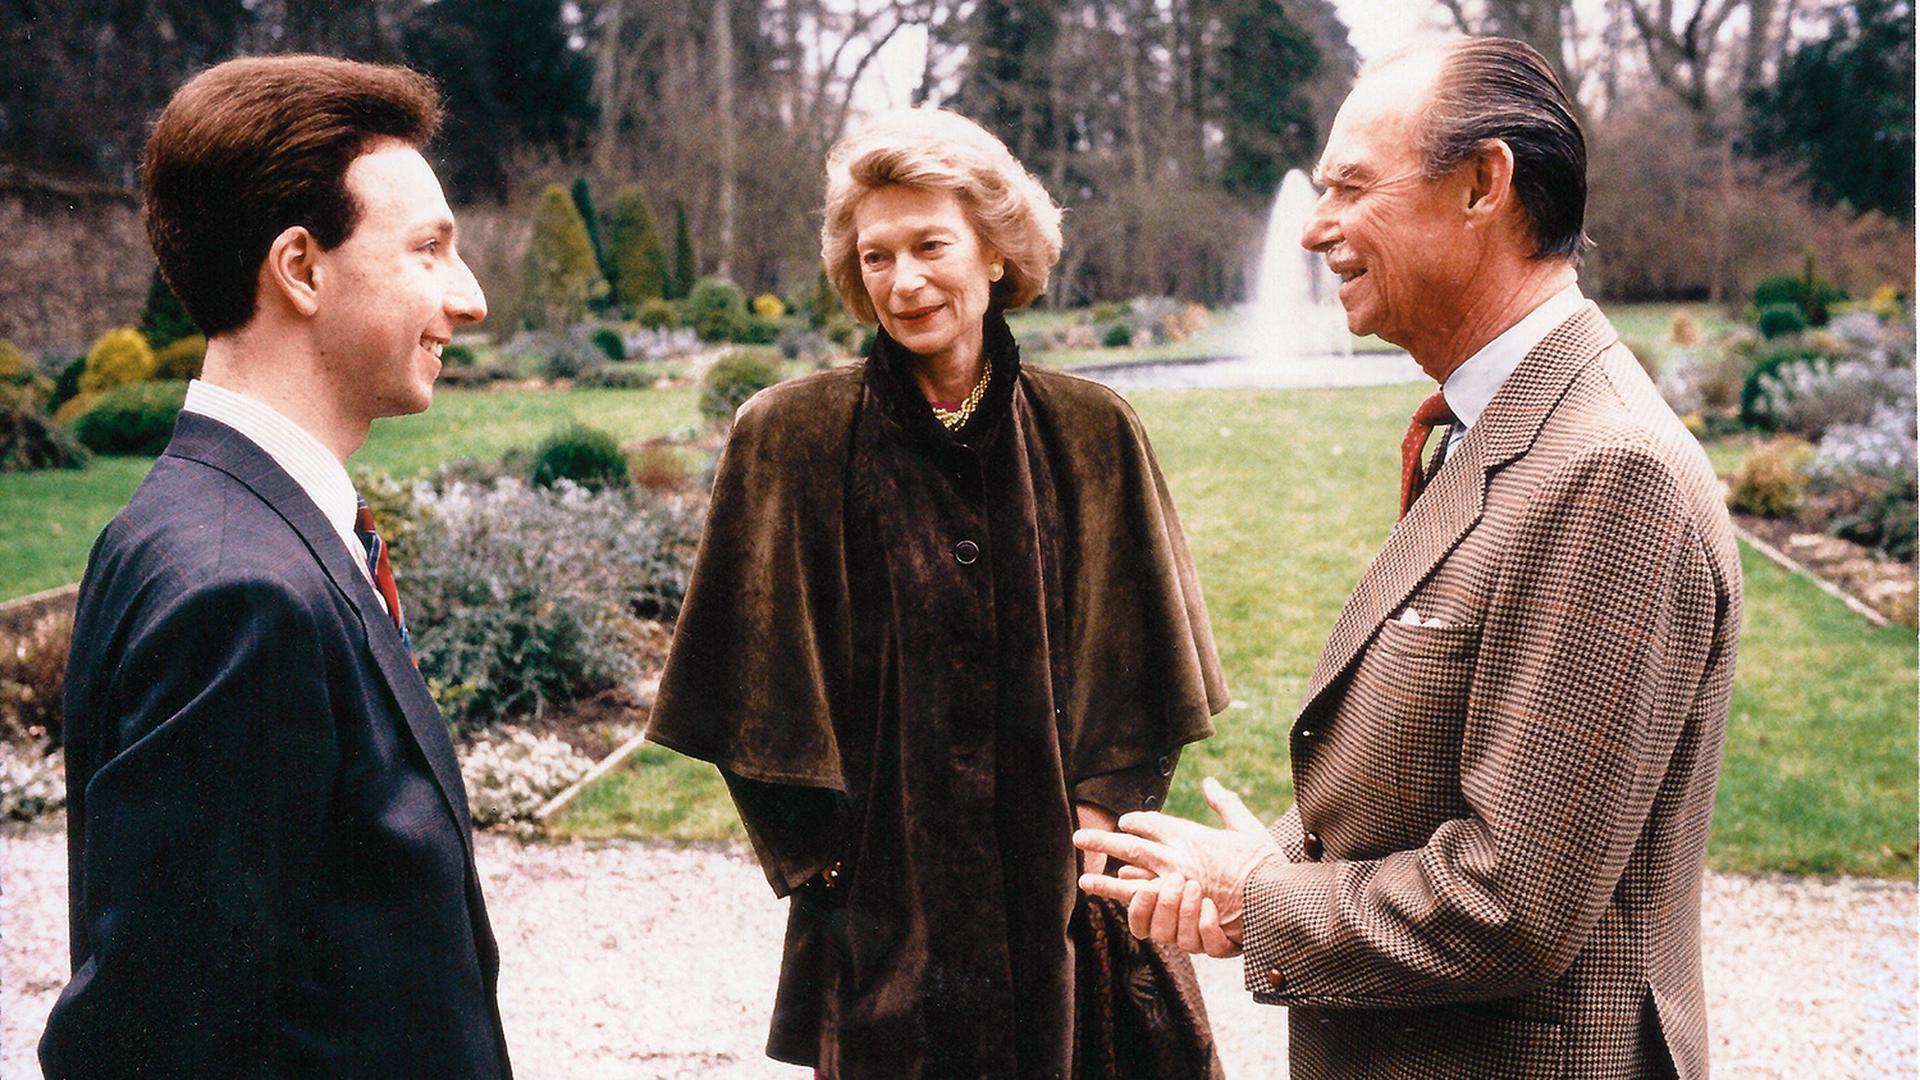 Stéphane Bern, le grand-duc Jean et sa femme, Joséphine-Charlotte, lors d'une interview accordée en 1989